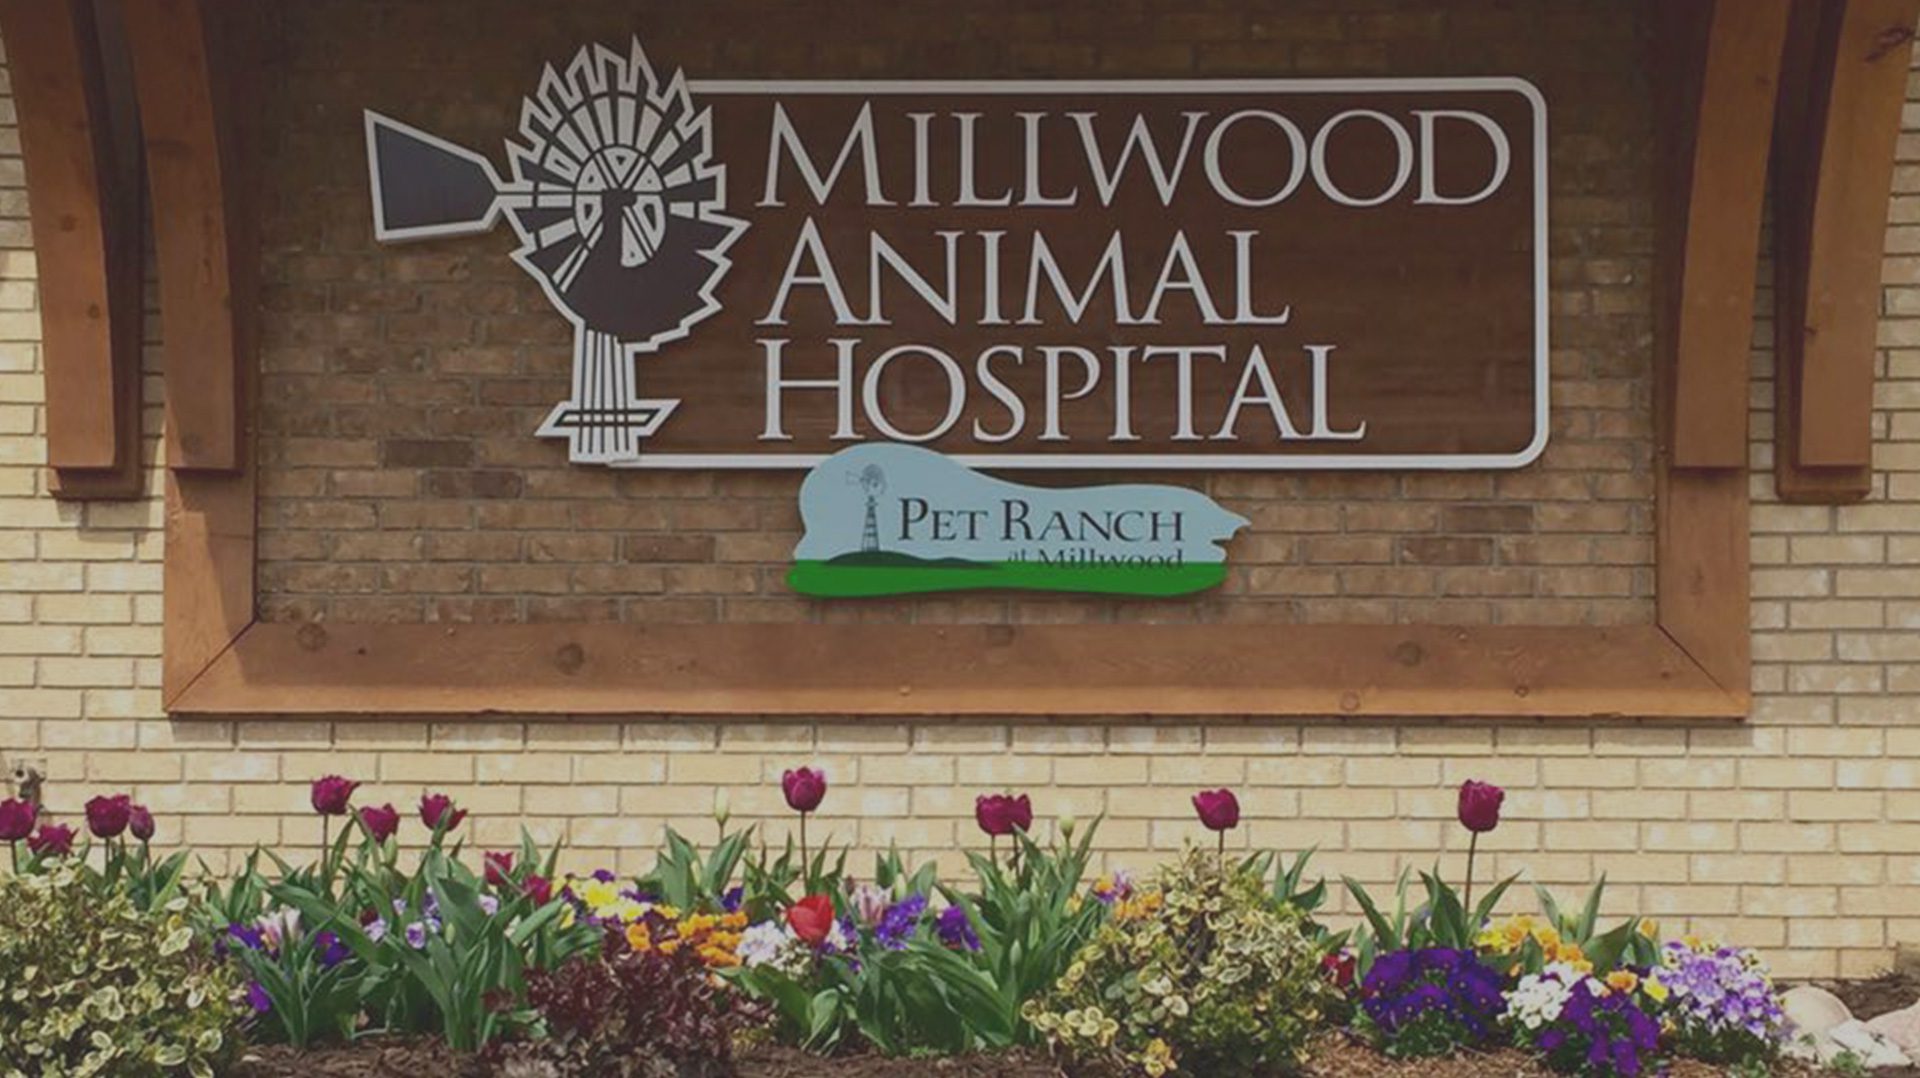 MILLWOOD ANIMAL HOSPITAL